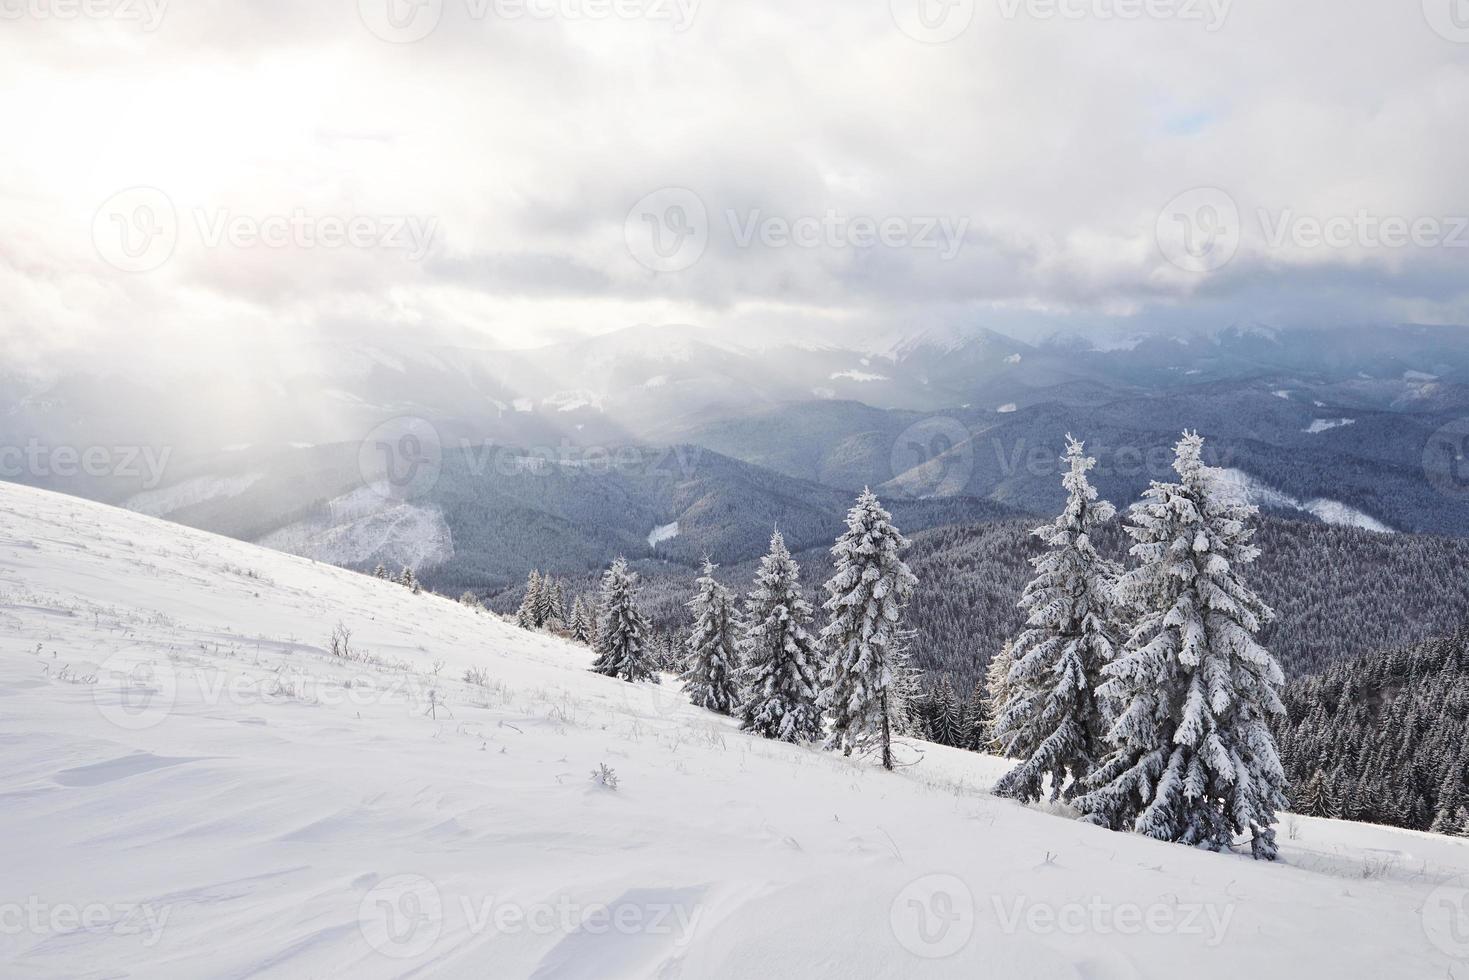 majestätische weiße Fichten, die im Sonnenlicht leuchten. malerische und wunderschöne winterliche Szene. Lage Ort Karpaten-Nationalpark, Ukraine, Europa. alpen skigebiet foto